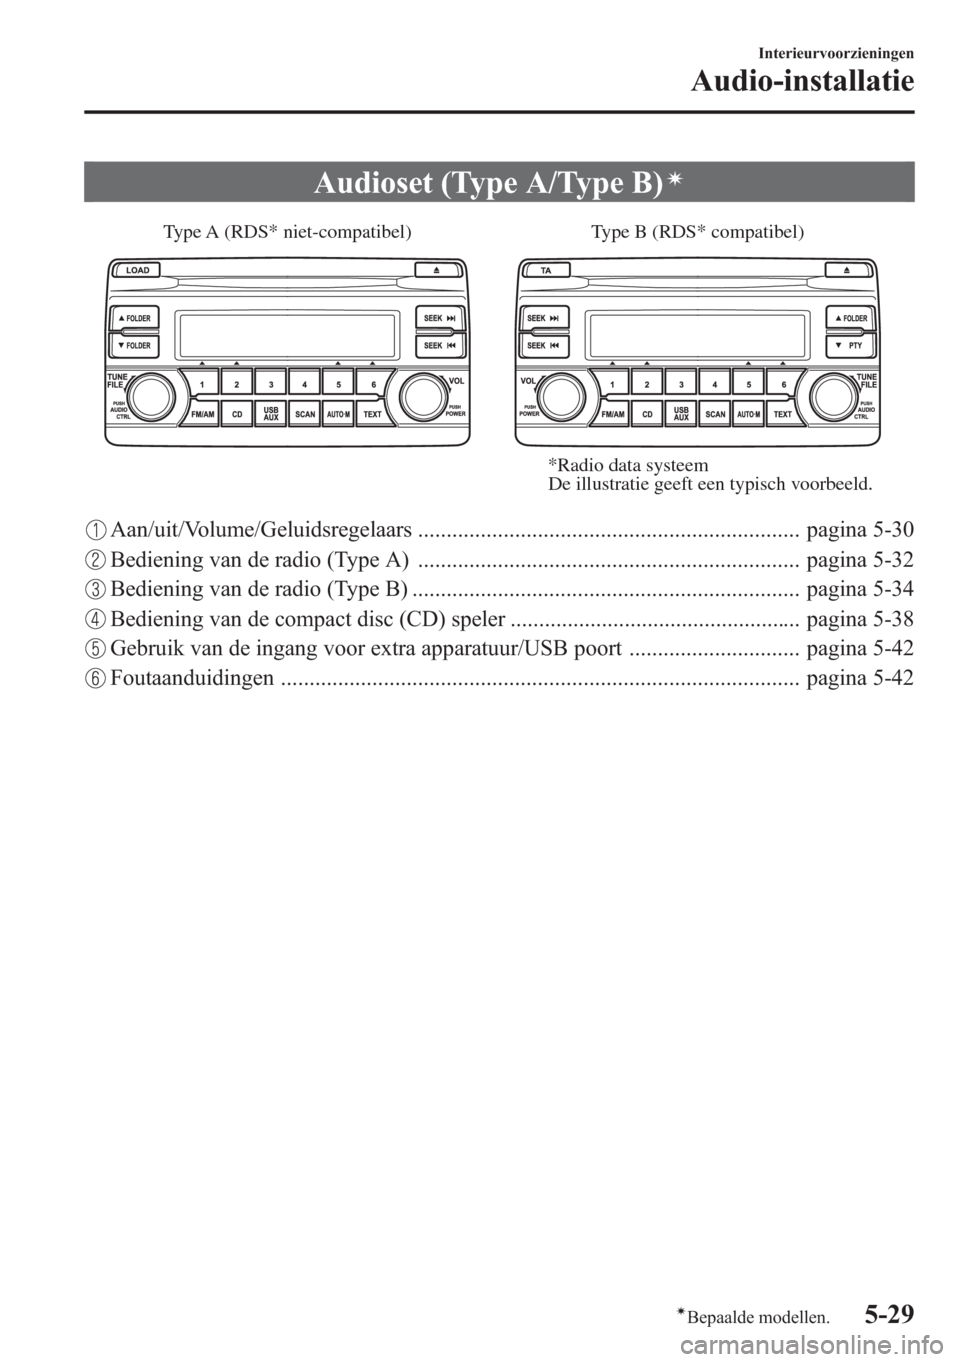 MAZDA MODEL CX-5 2013  Handleiding (in Dutch) Audioset (Type A/Type B)í
Type B (RDS* compatibel) Type A (RDS* niet-compatibel)
*Radio data systeem
De illustratie geeft een typisch voorbeeld.
Aan/uit/Volume/Geluidsregelaars ......................